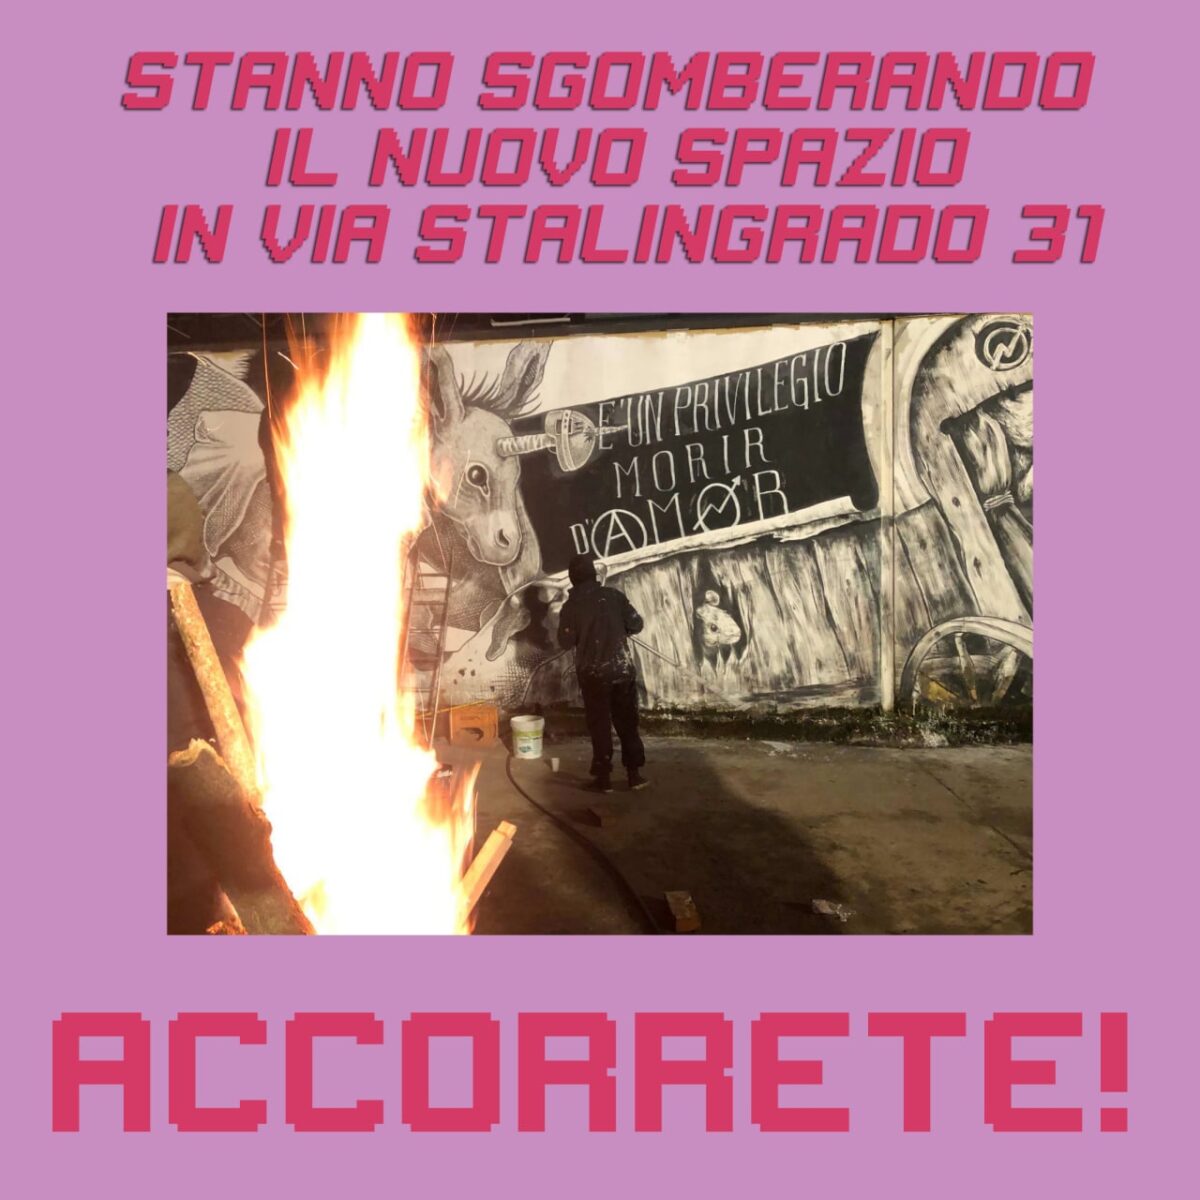 Sgombero Via Stalingrado 31